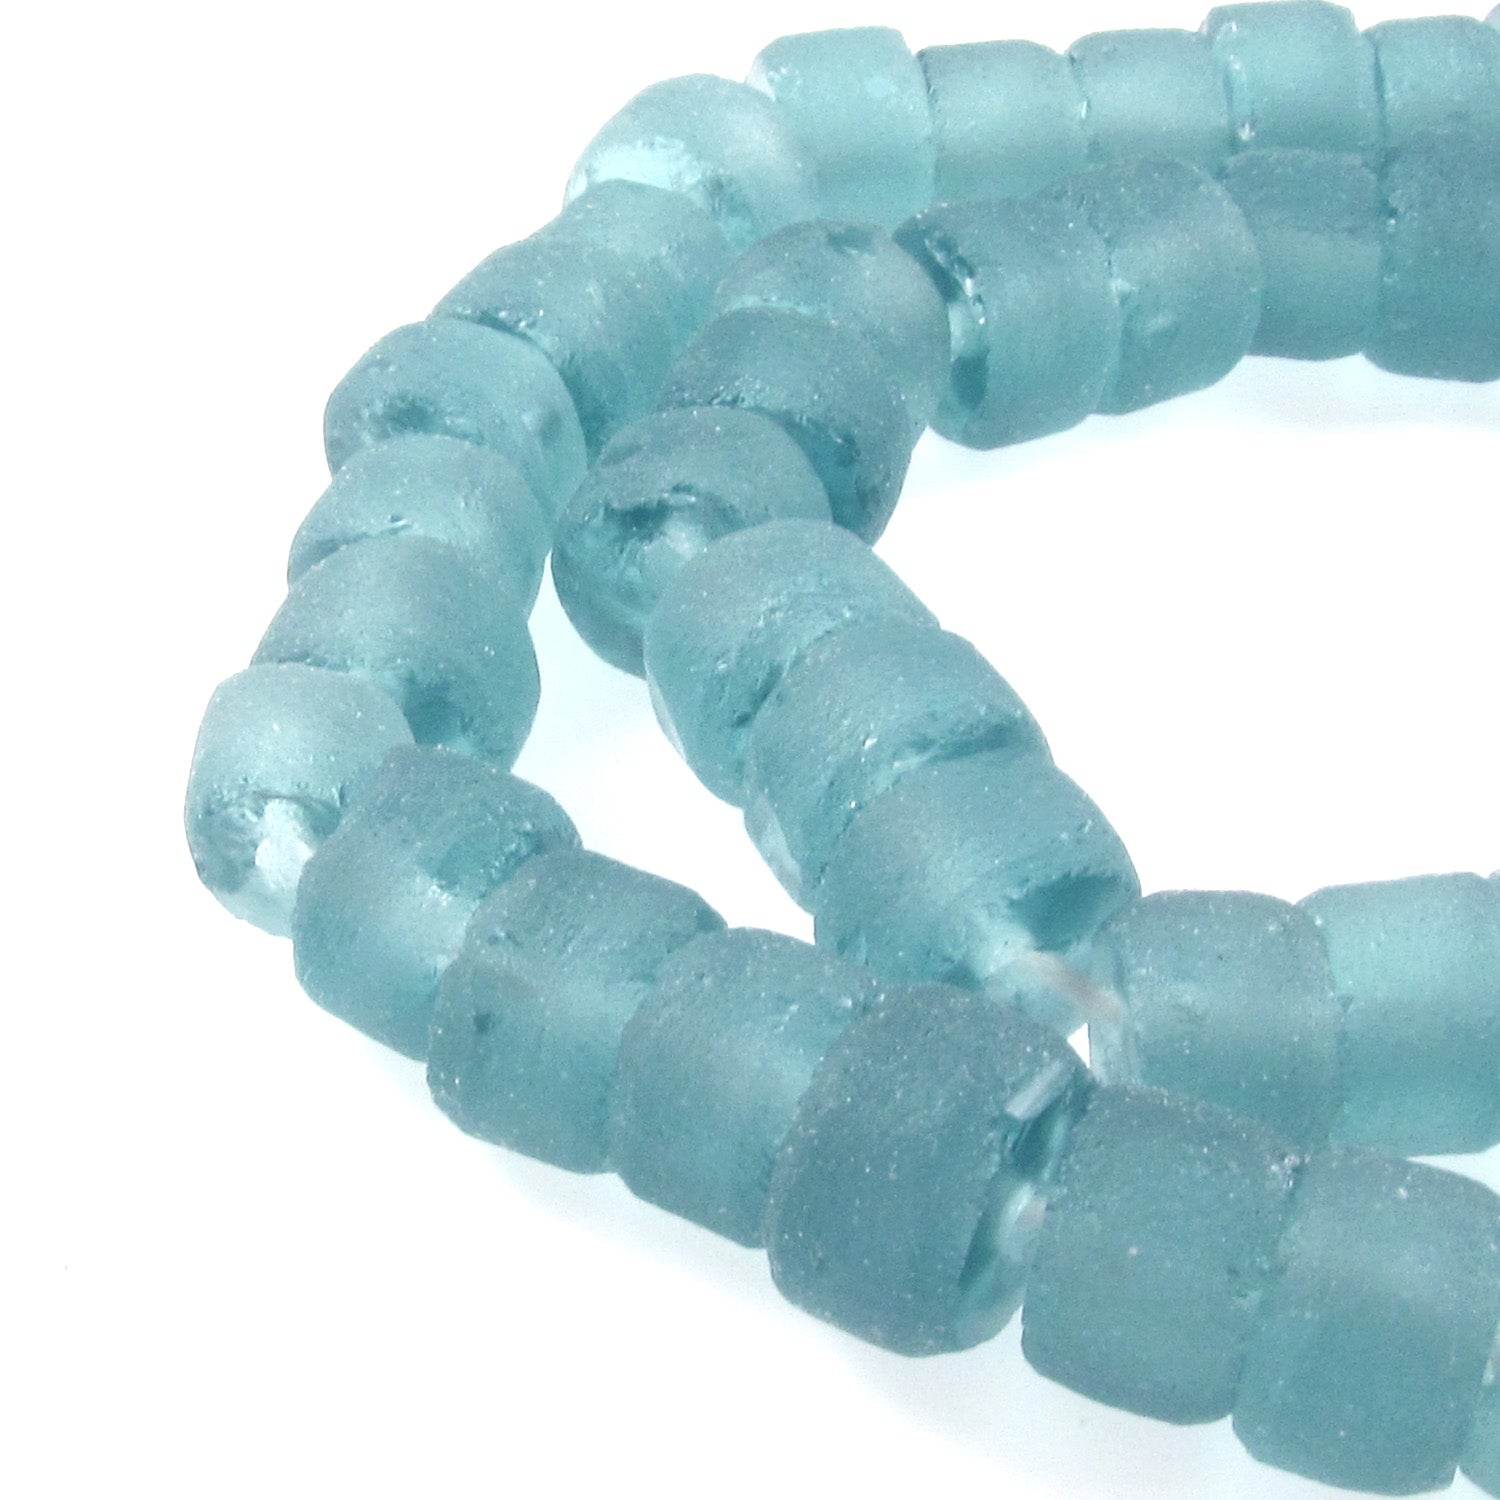 Jumbo Recycled Glass Beads - Purpose Jewelry